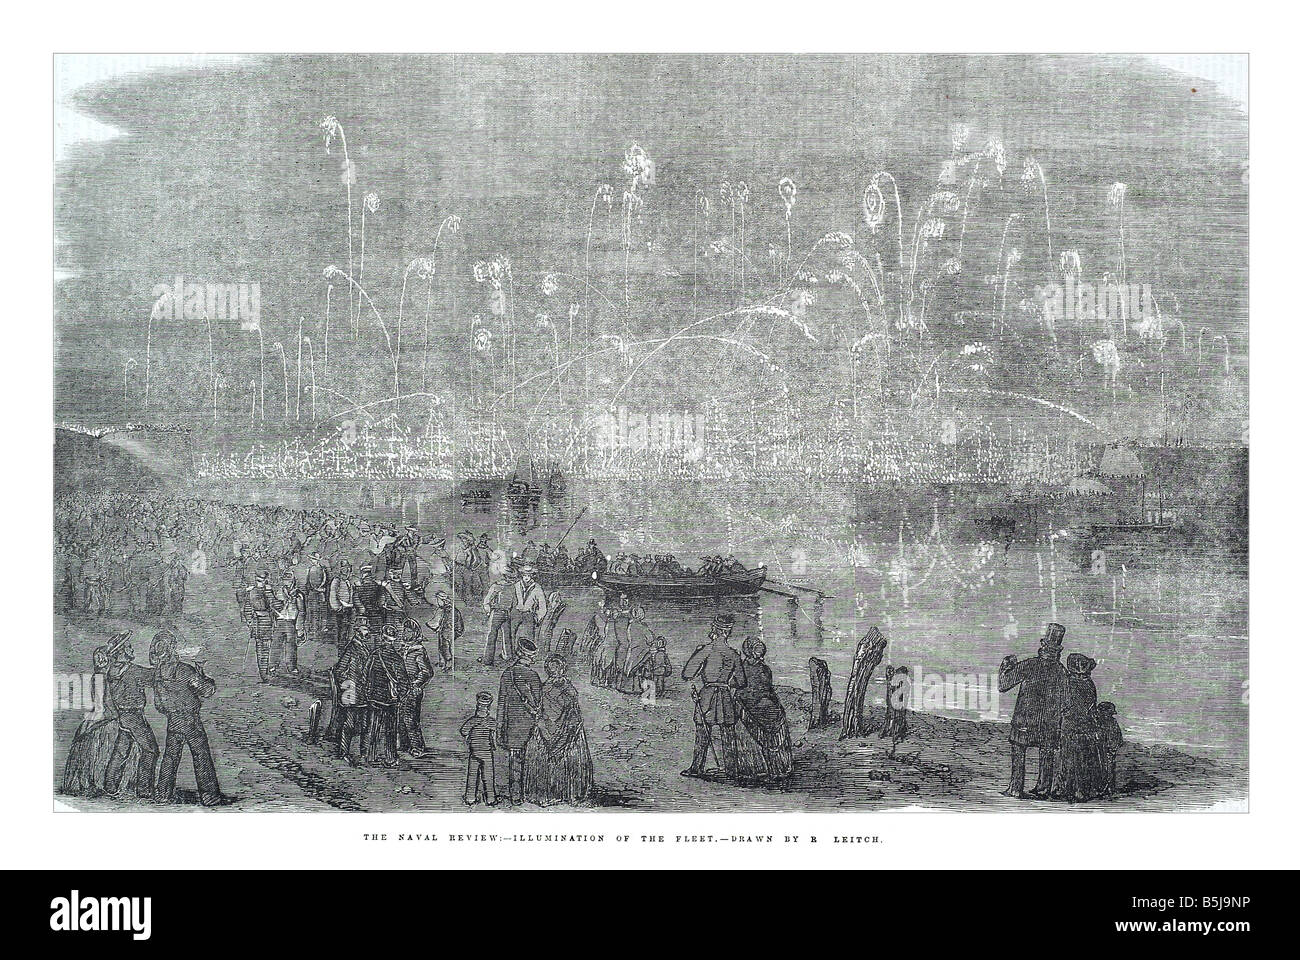 Die Flottenparade Beleuchtung der Flotte gezeichnet von R Leich 3. Mai 1856 die Illustrated London News-Seite 477 Stockfoto